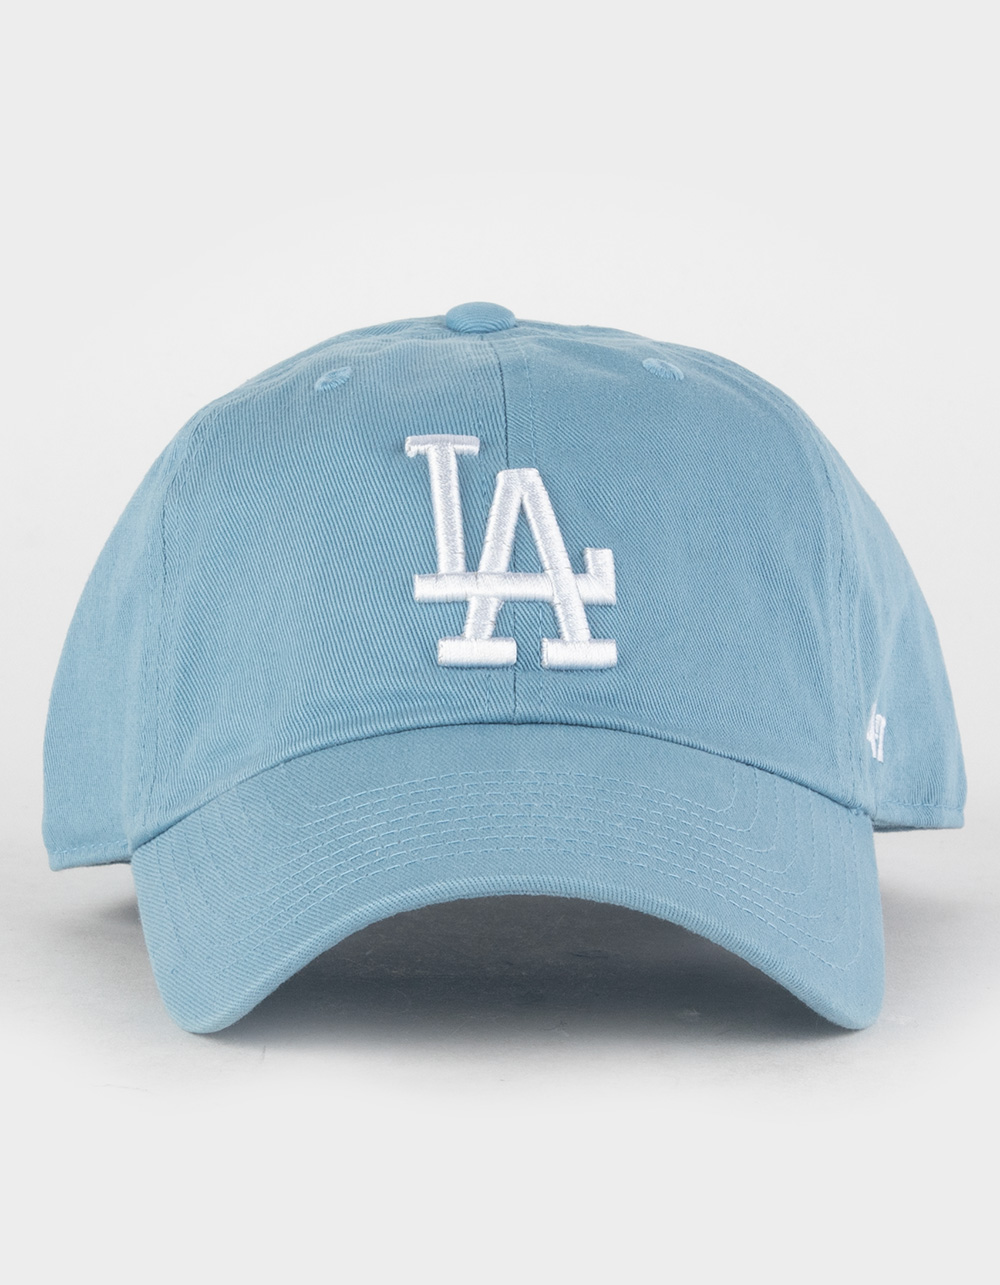 Los Angeles Dodgers Strapback '47 Brand Clean Up Adjustable Cap Hat Lavender